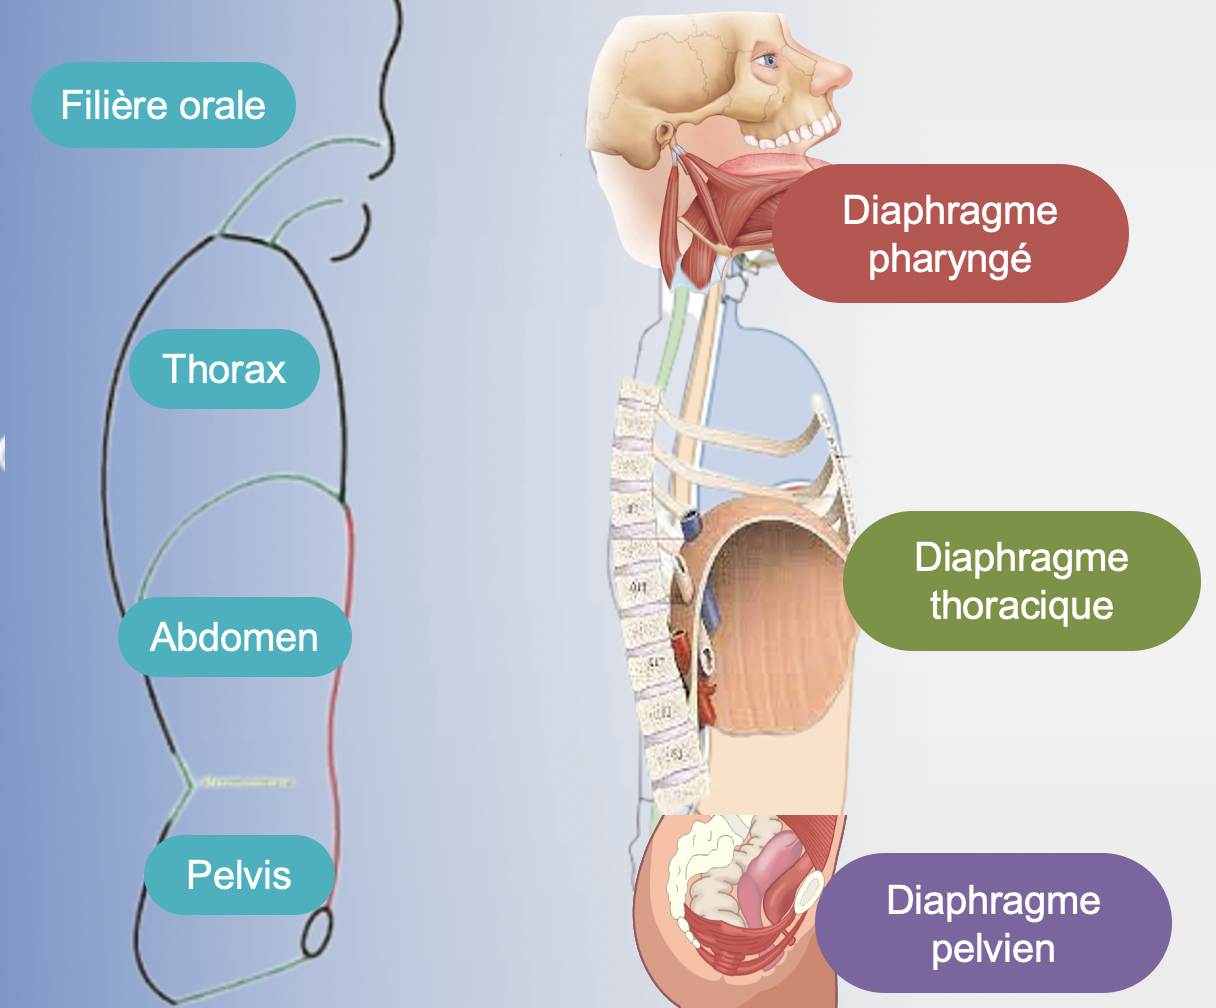 daophragmes pharyngé, thoracique et pelvien : influences psychophysiologie